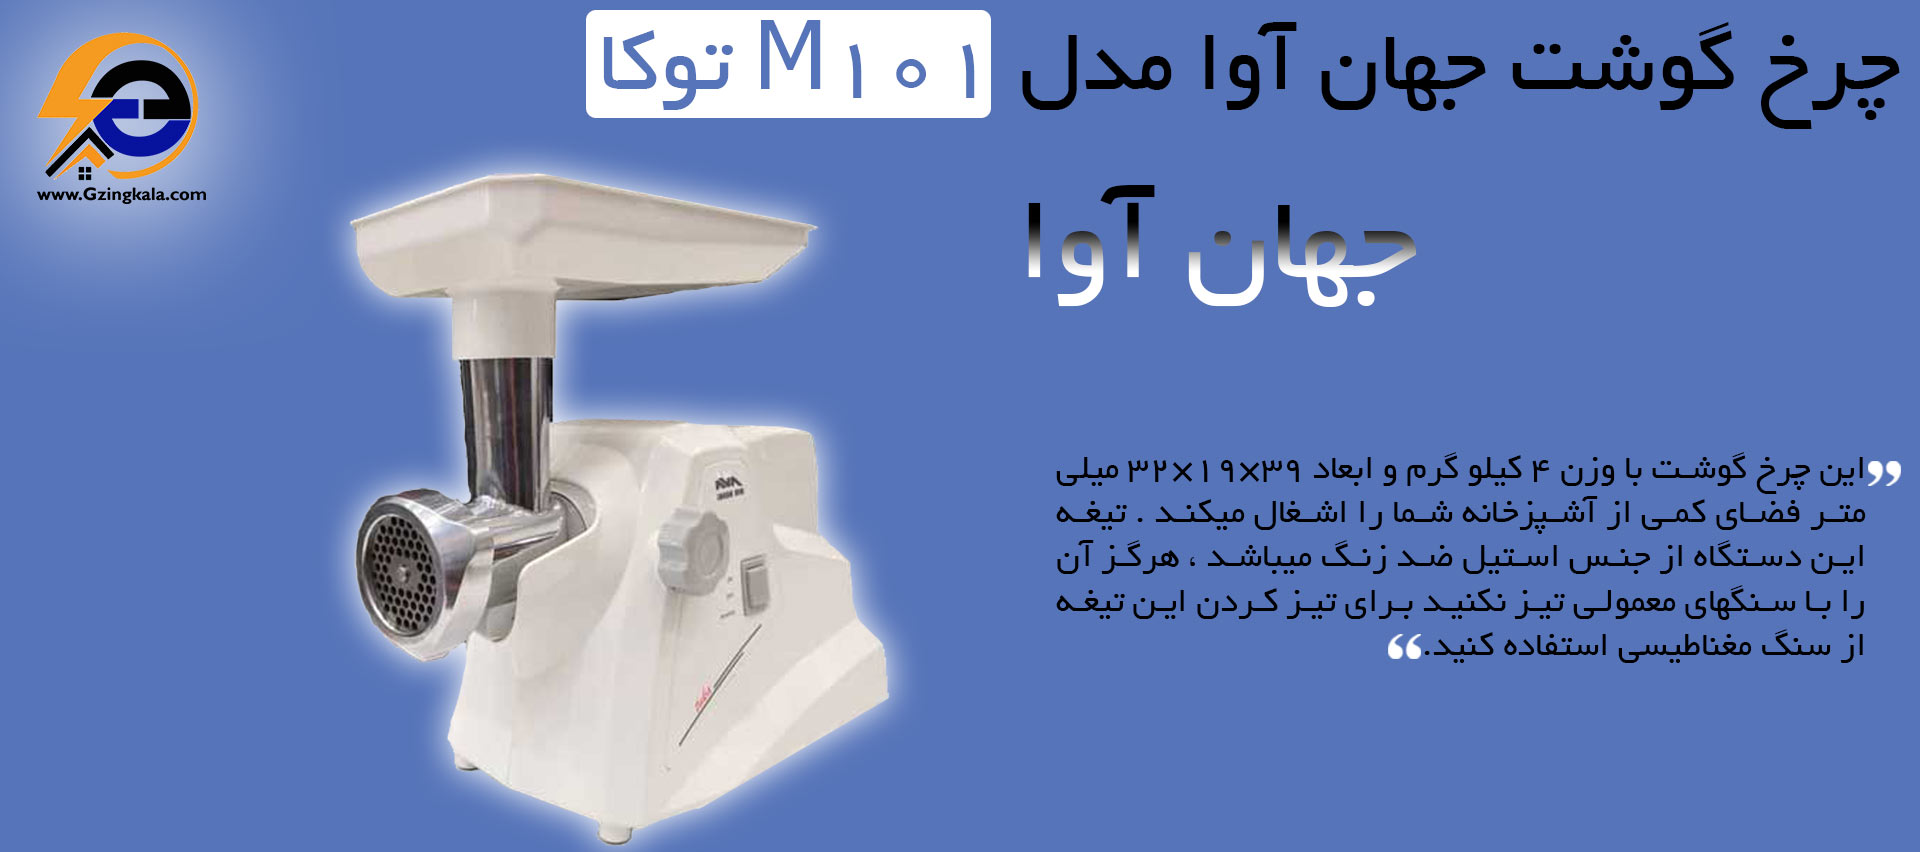 قیمت چرخ گوشت جهان آوا مدل M101 توکا